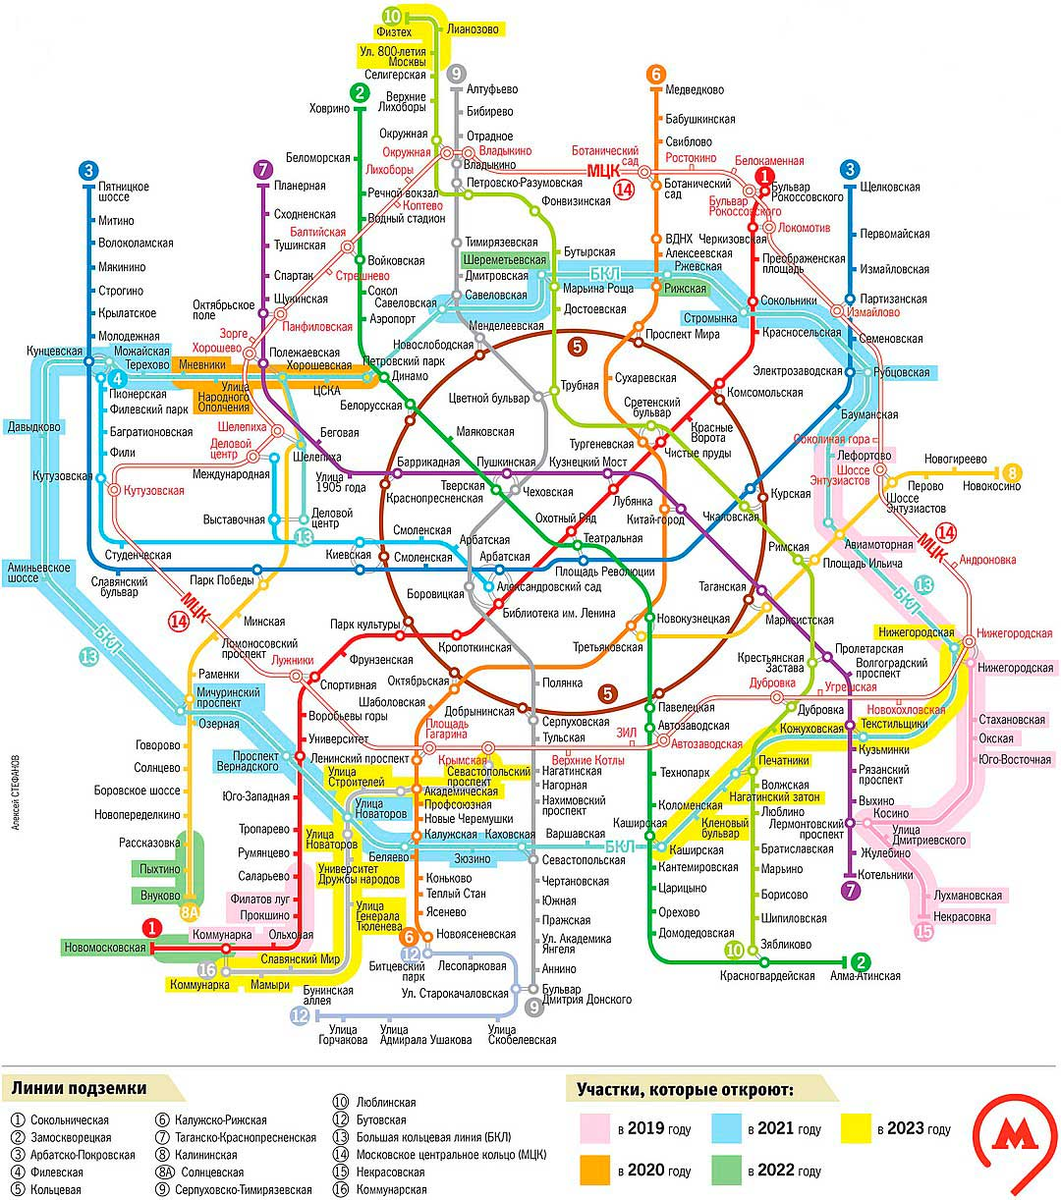 Метро москвы полное. Схема Московского метрополитена 2021 новая. Схема метрополитена на карте Москвы 2021. Метро Москва схема 2021. Метро Москвы схема 2021 с новыми станциями 2021.